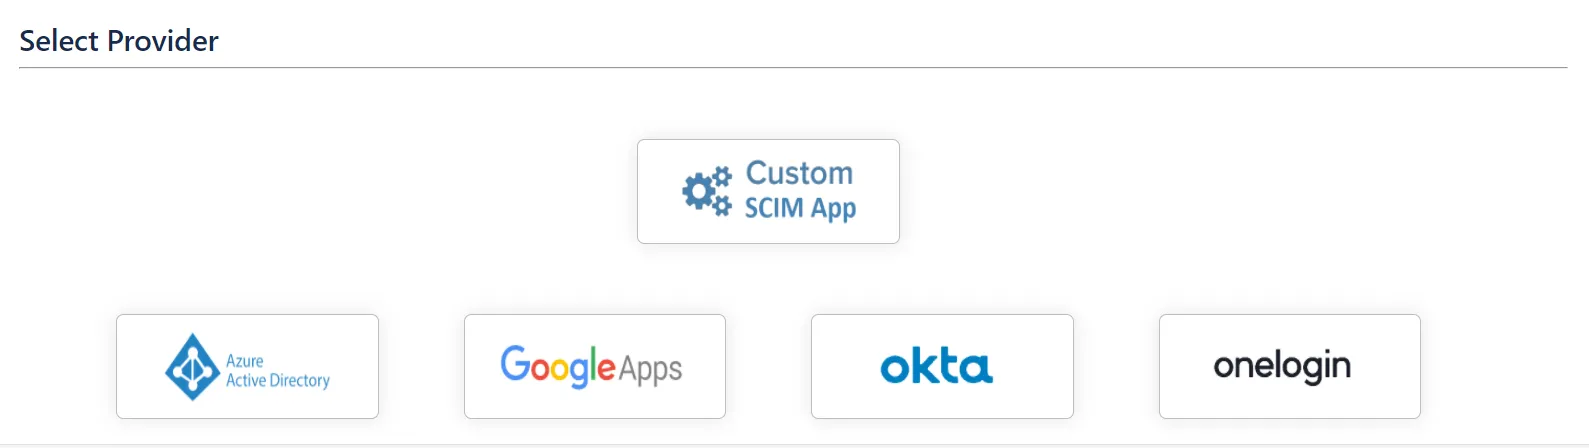 Select custom as SCIM Provider